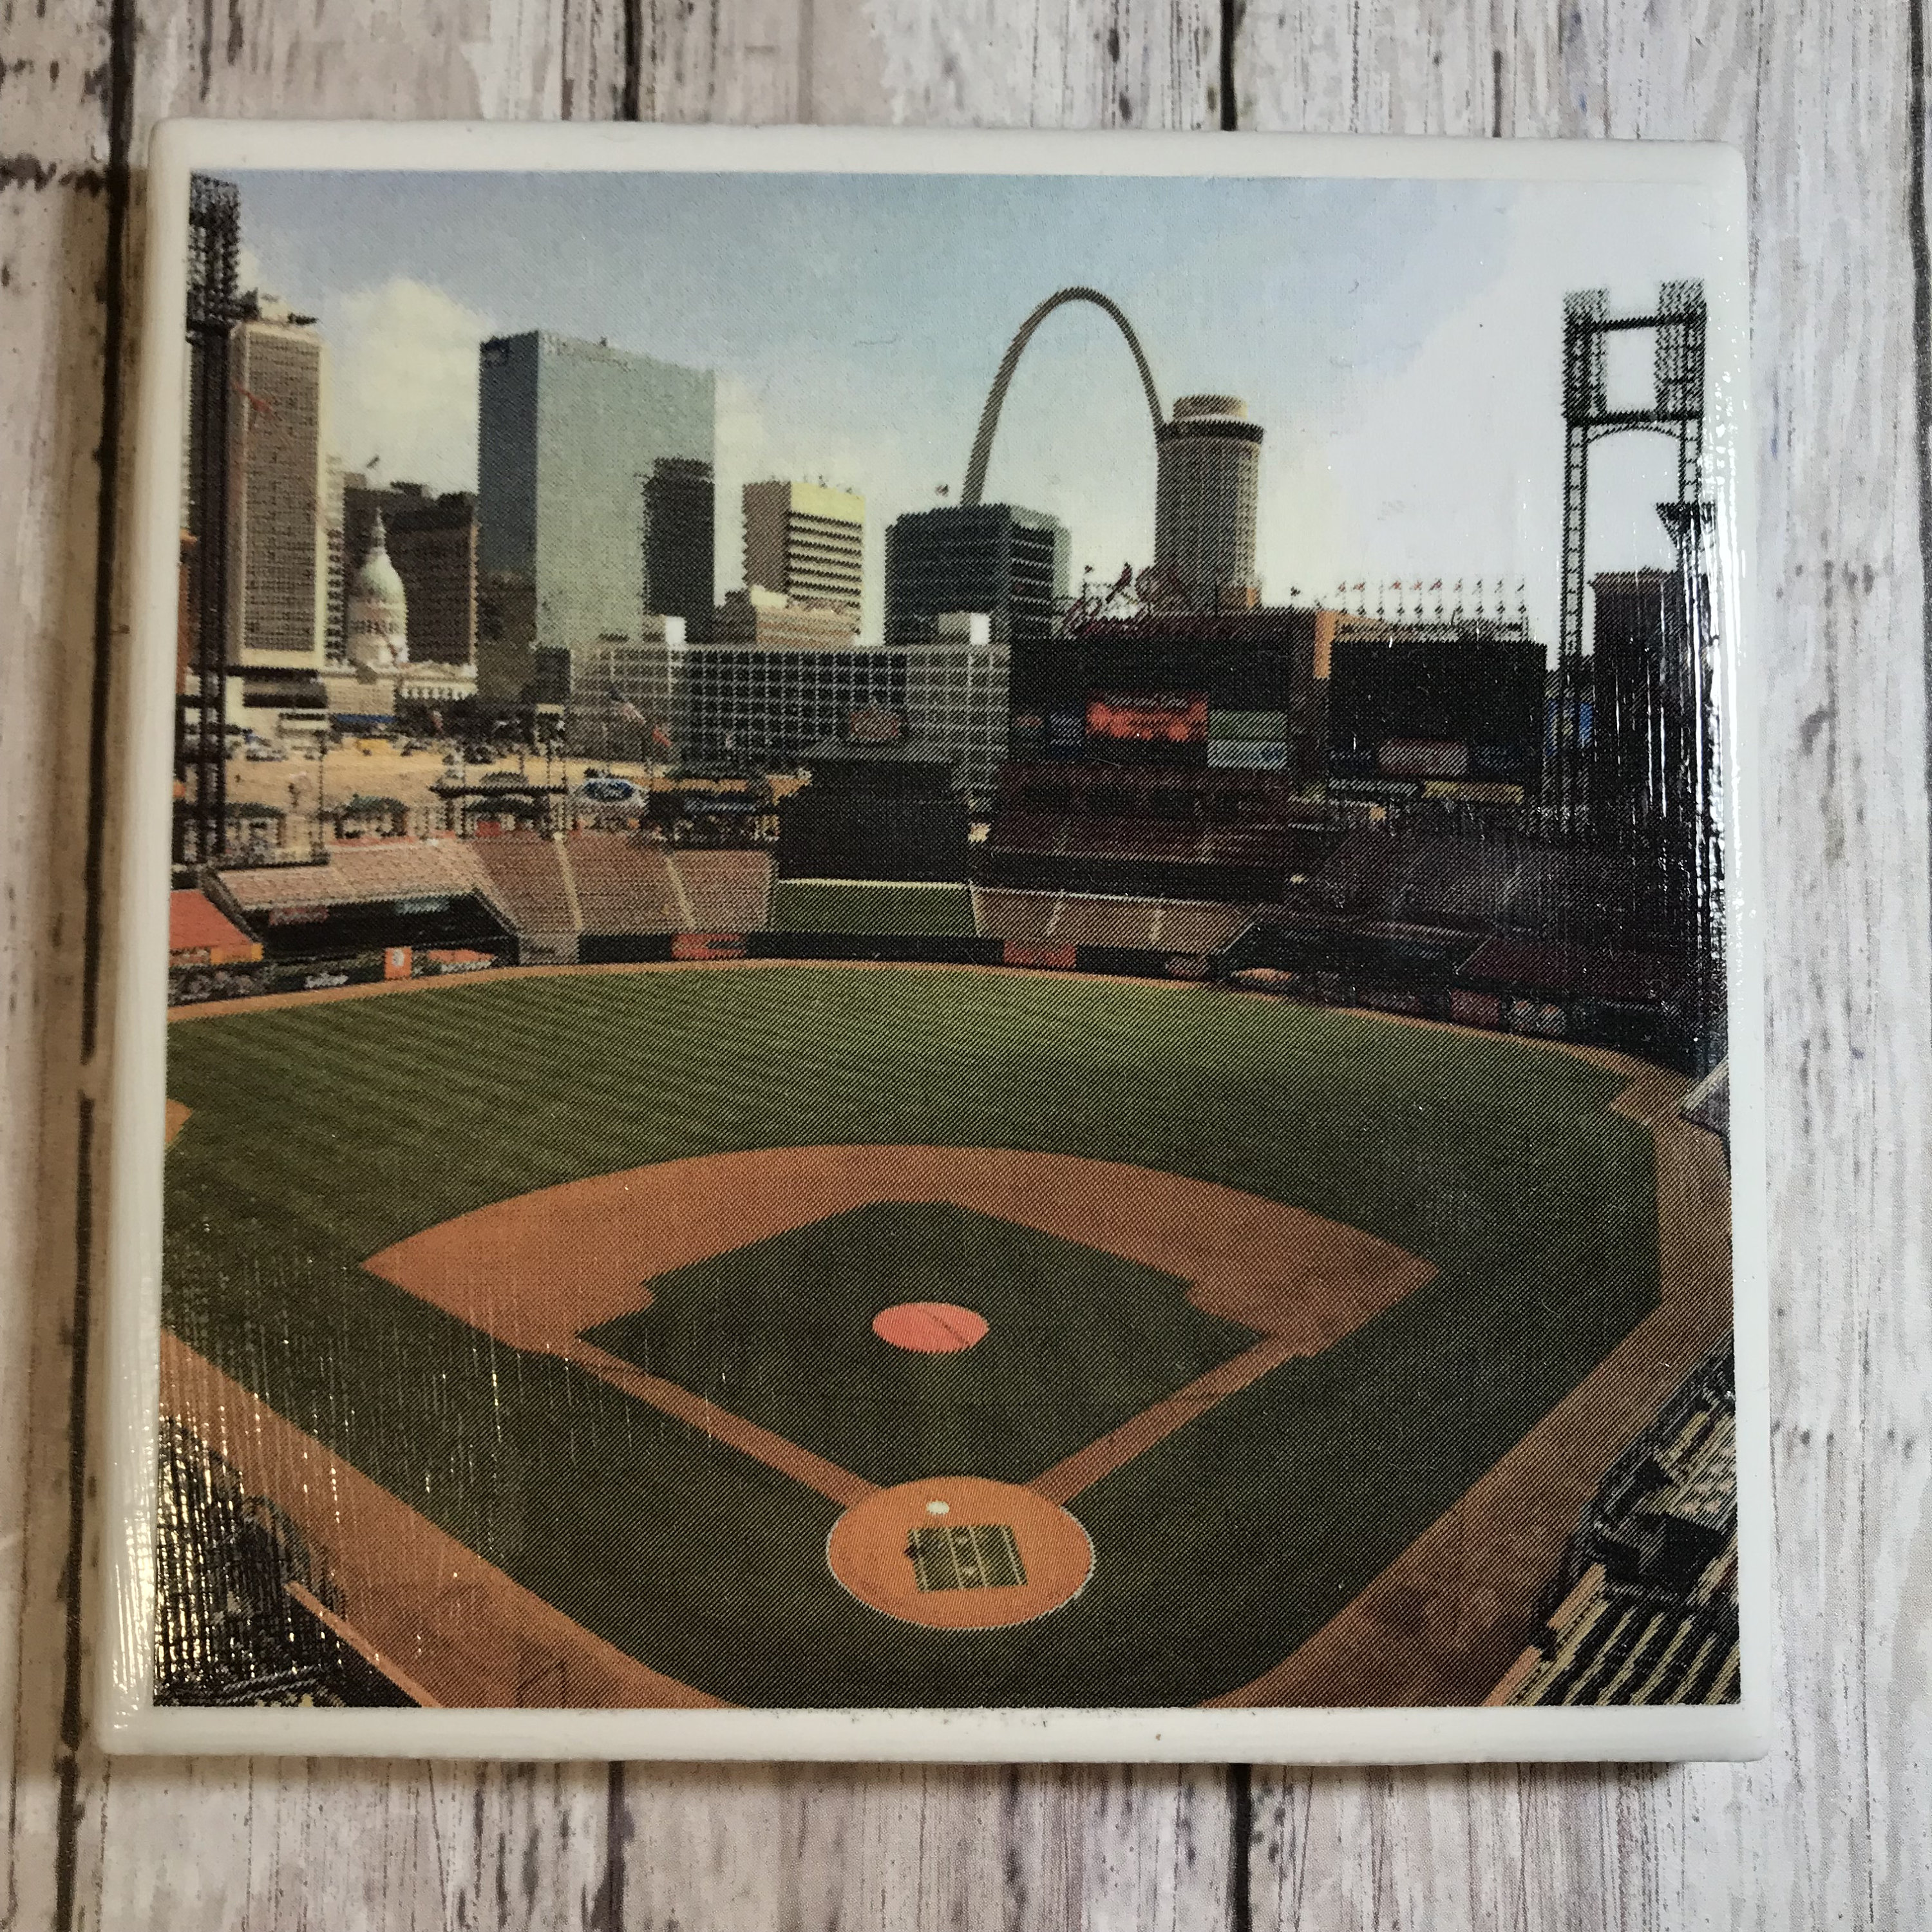 St. Louis Cardinals Busch Stadium/ Art/ Coaster Tile Set/ Cardinals Fan/ MLB/ Hostess Gift/ Home Bar